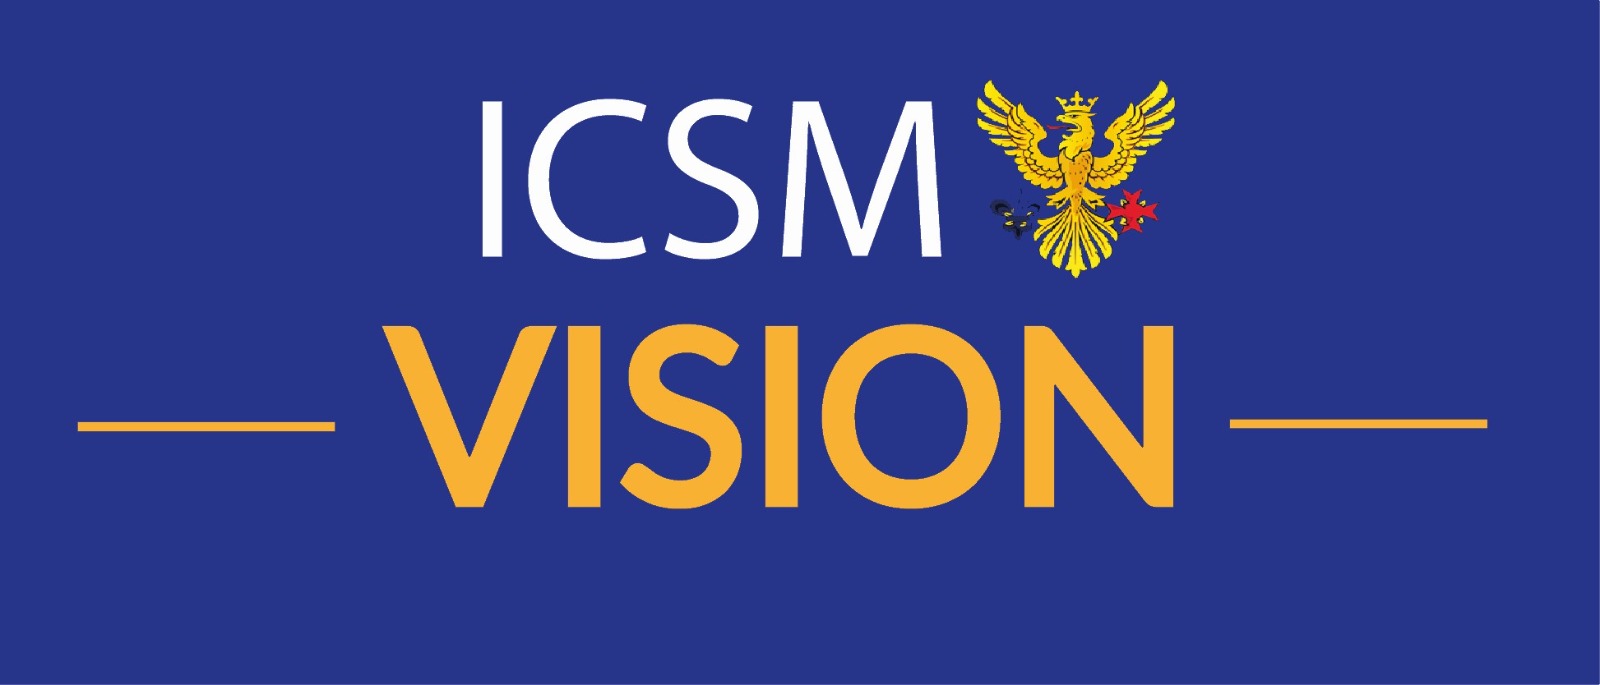 ICSM Vision